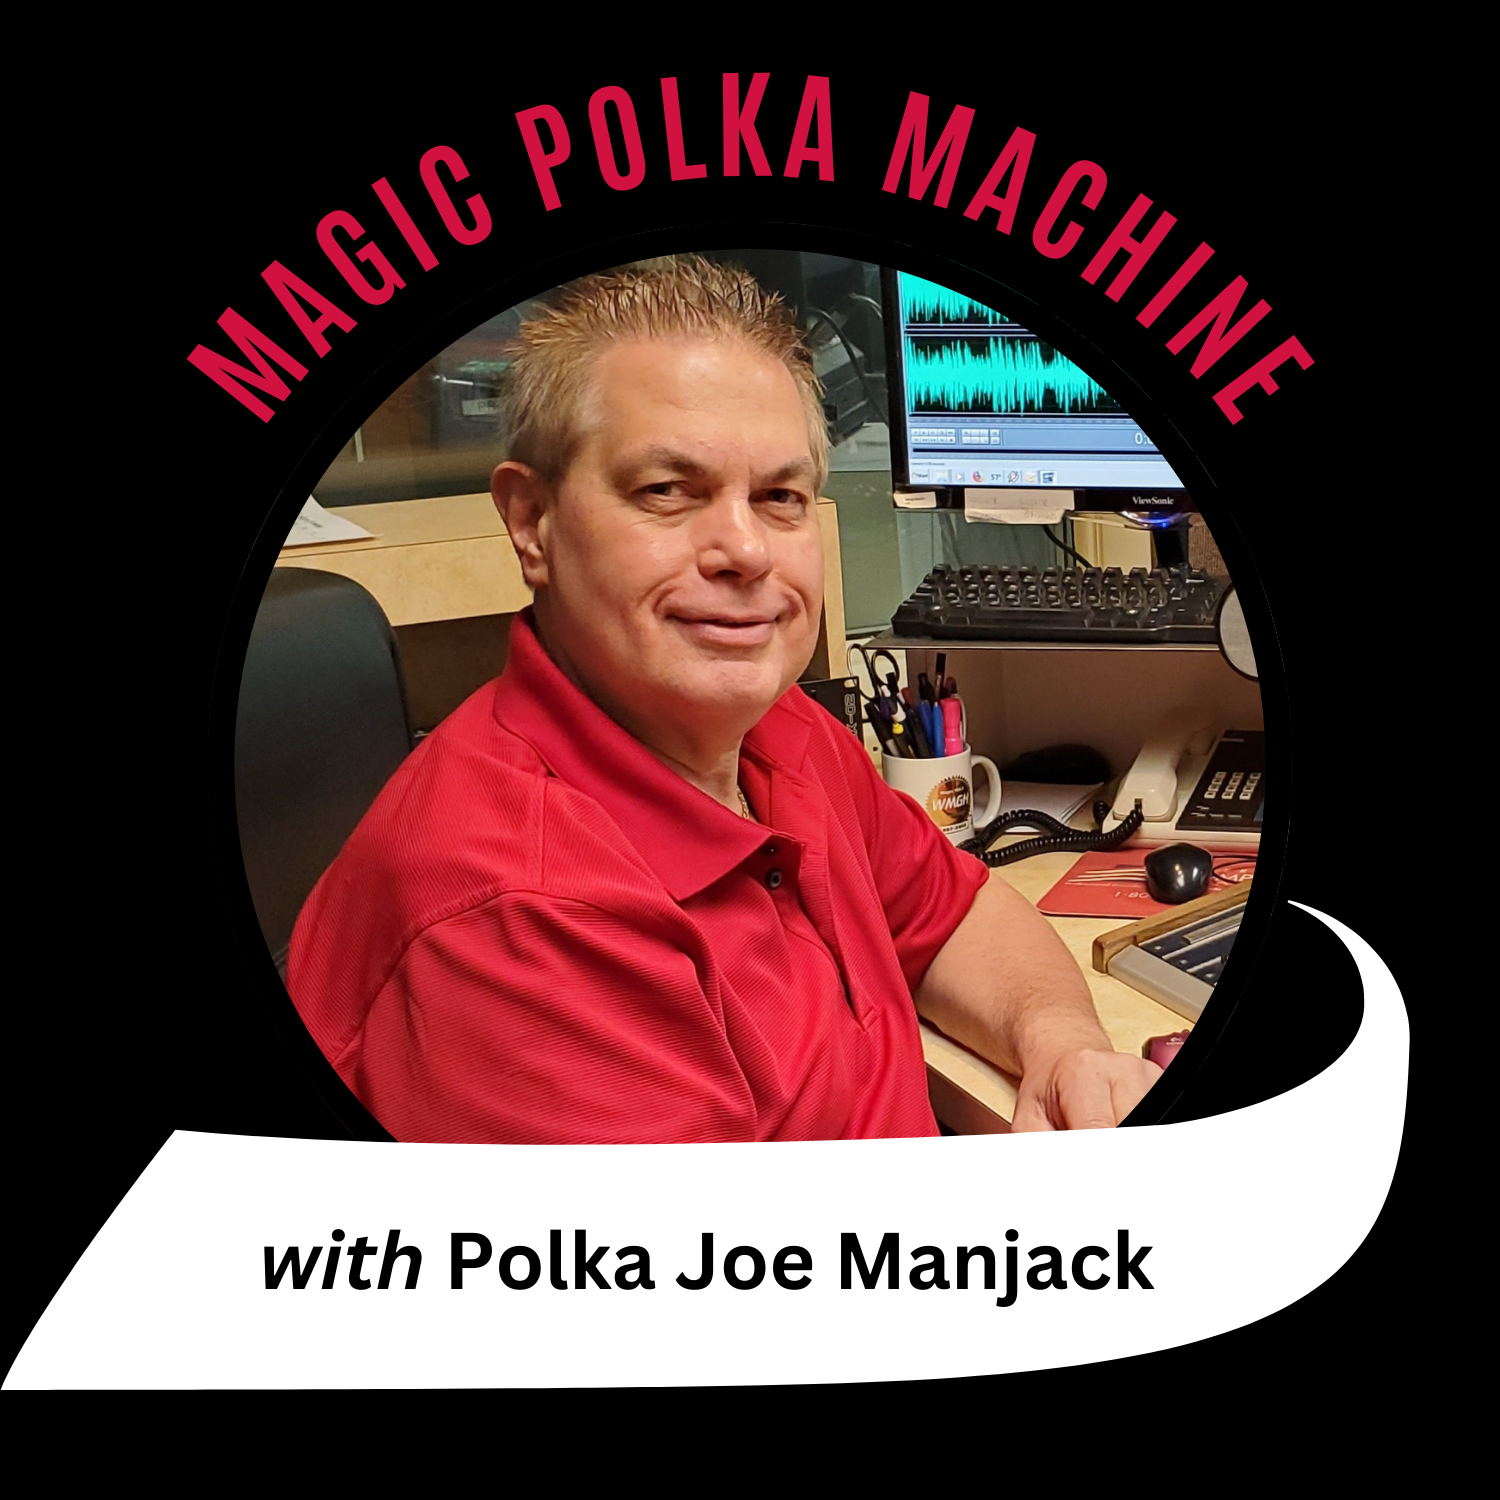 magic polka machine logo